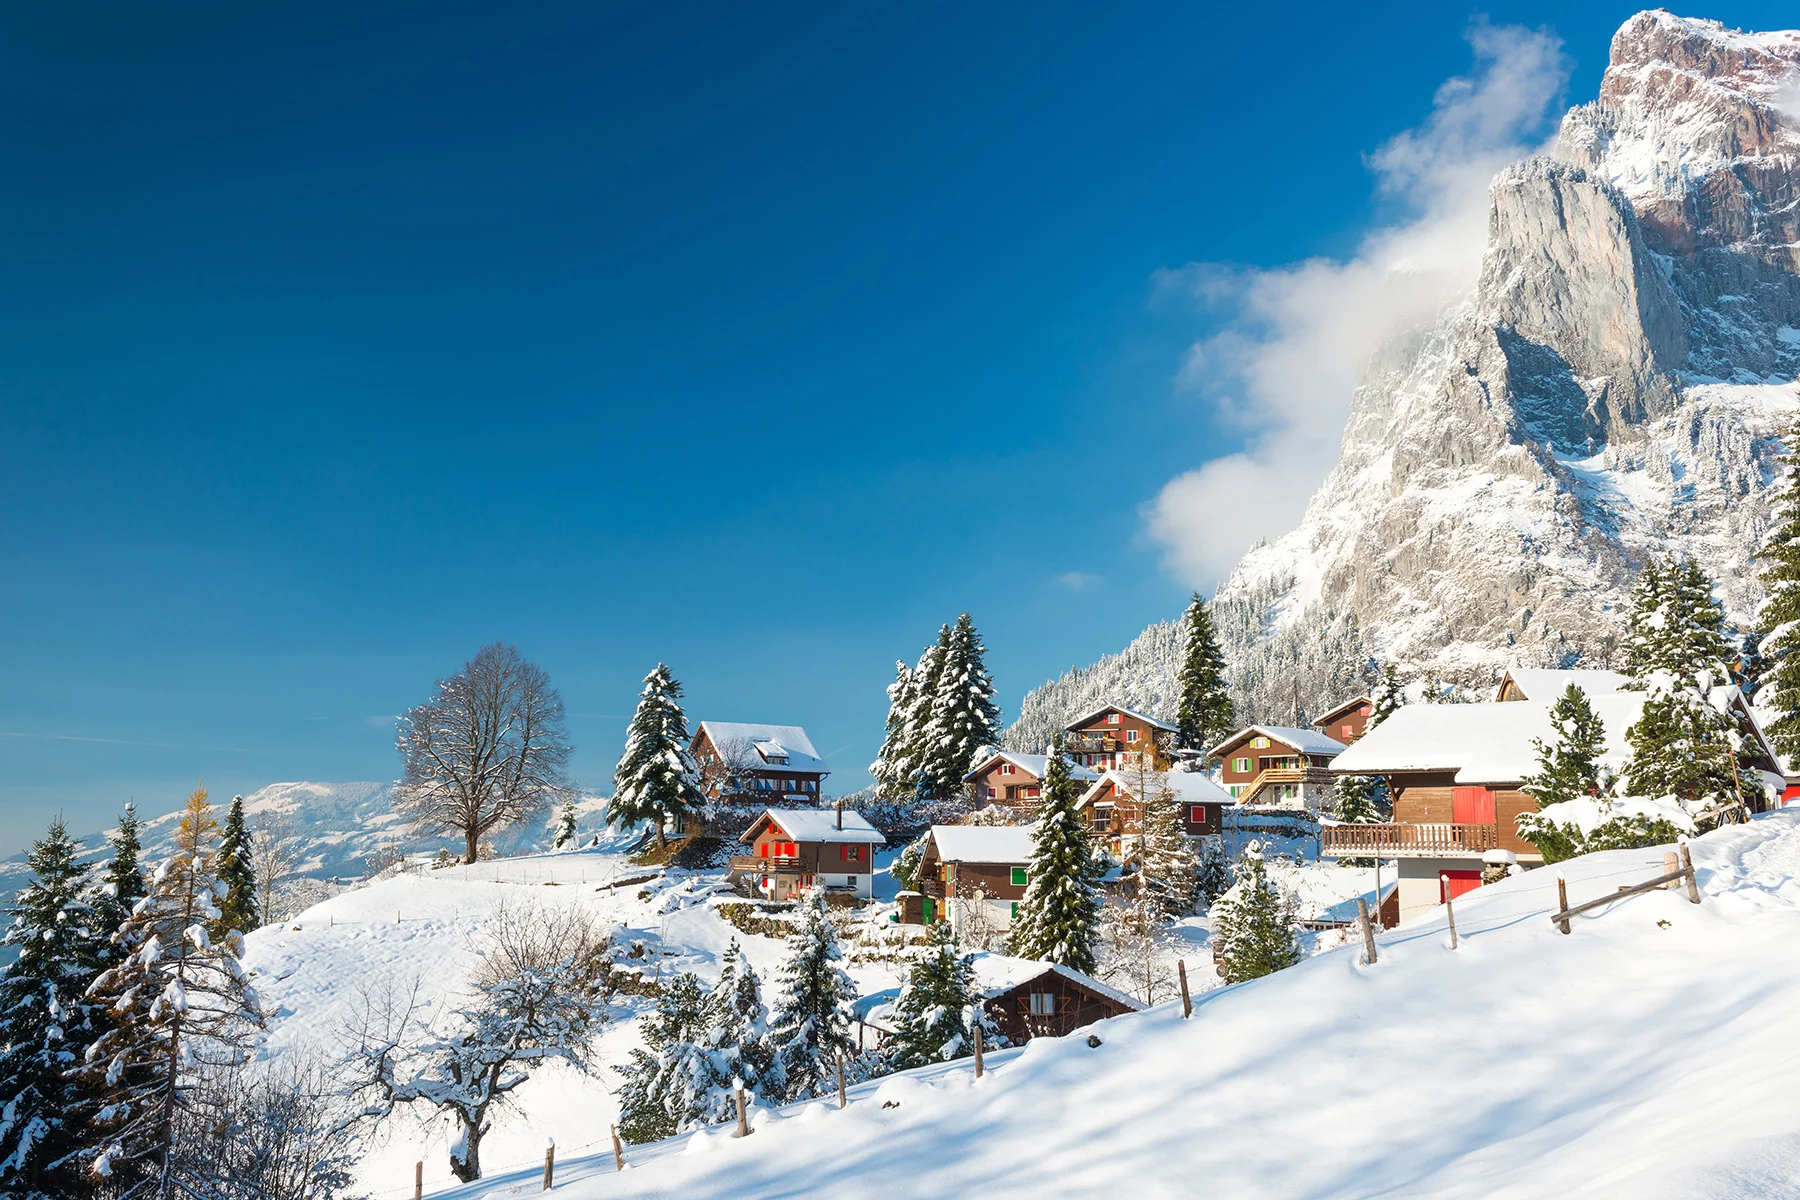 Snowy village in Switzerland